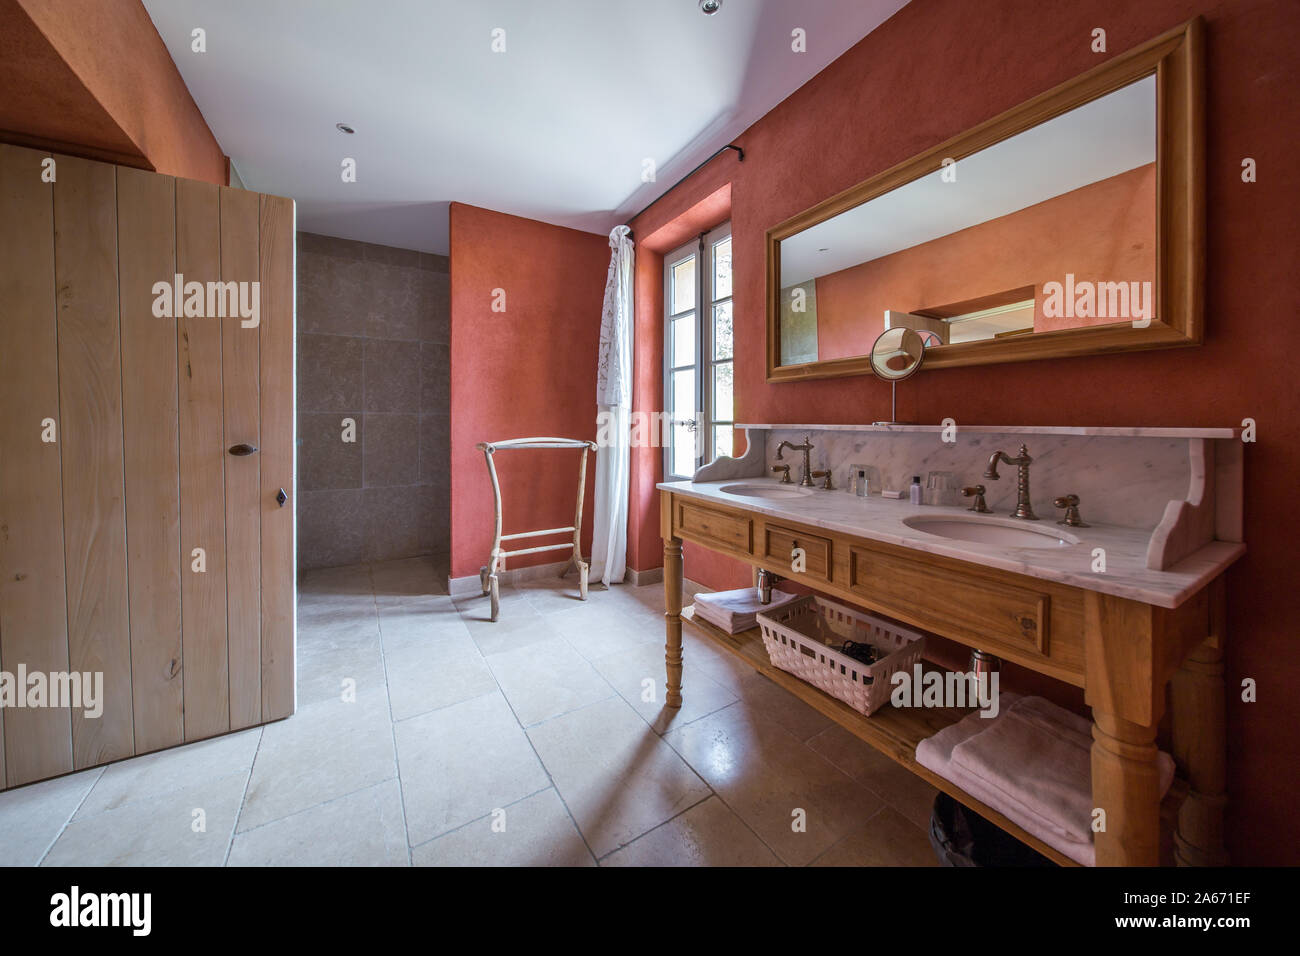 Accesorios de baño en estantes de madera Fotografía de stock - Alamy